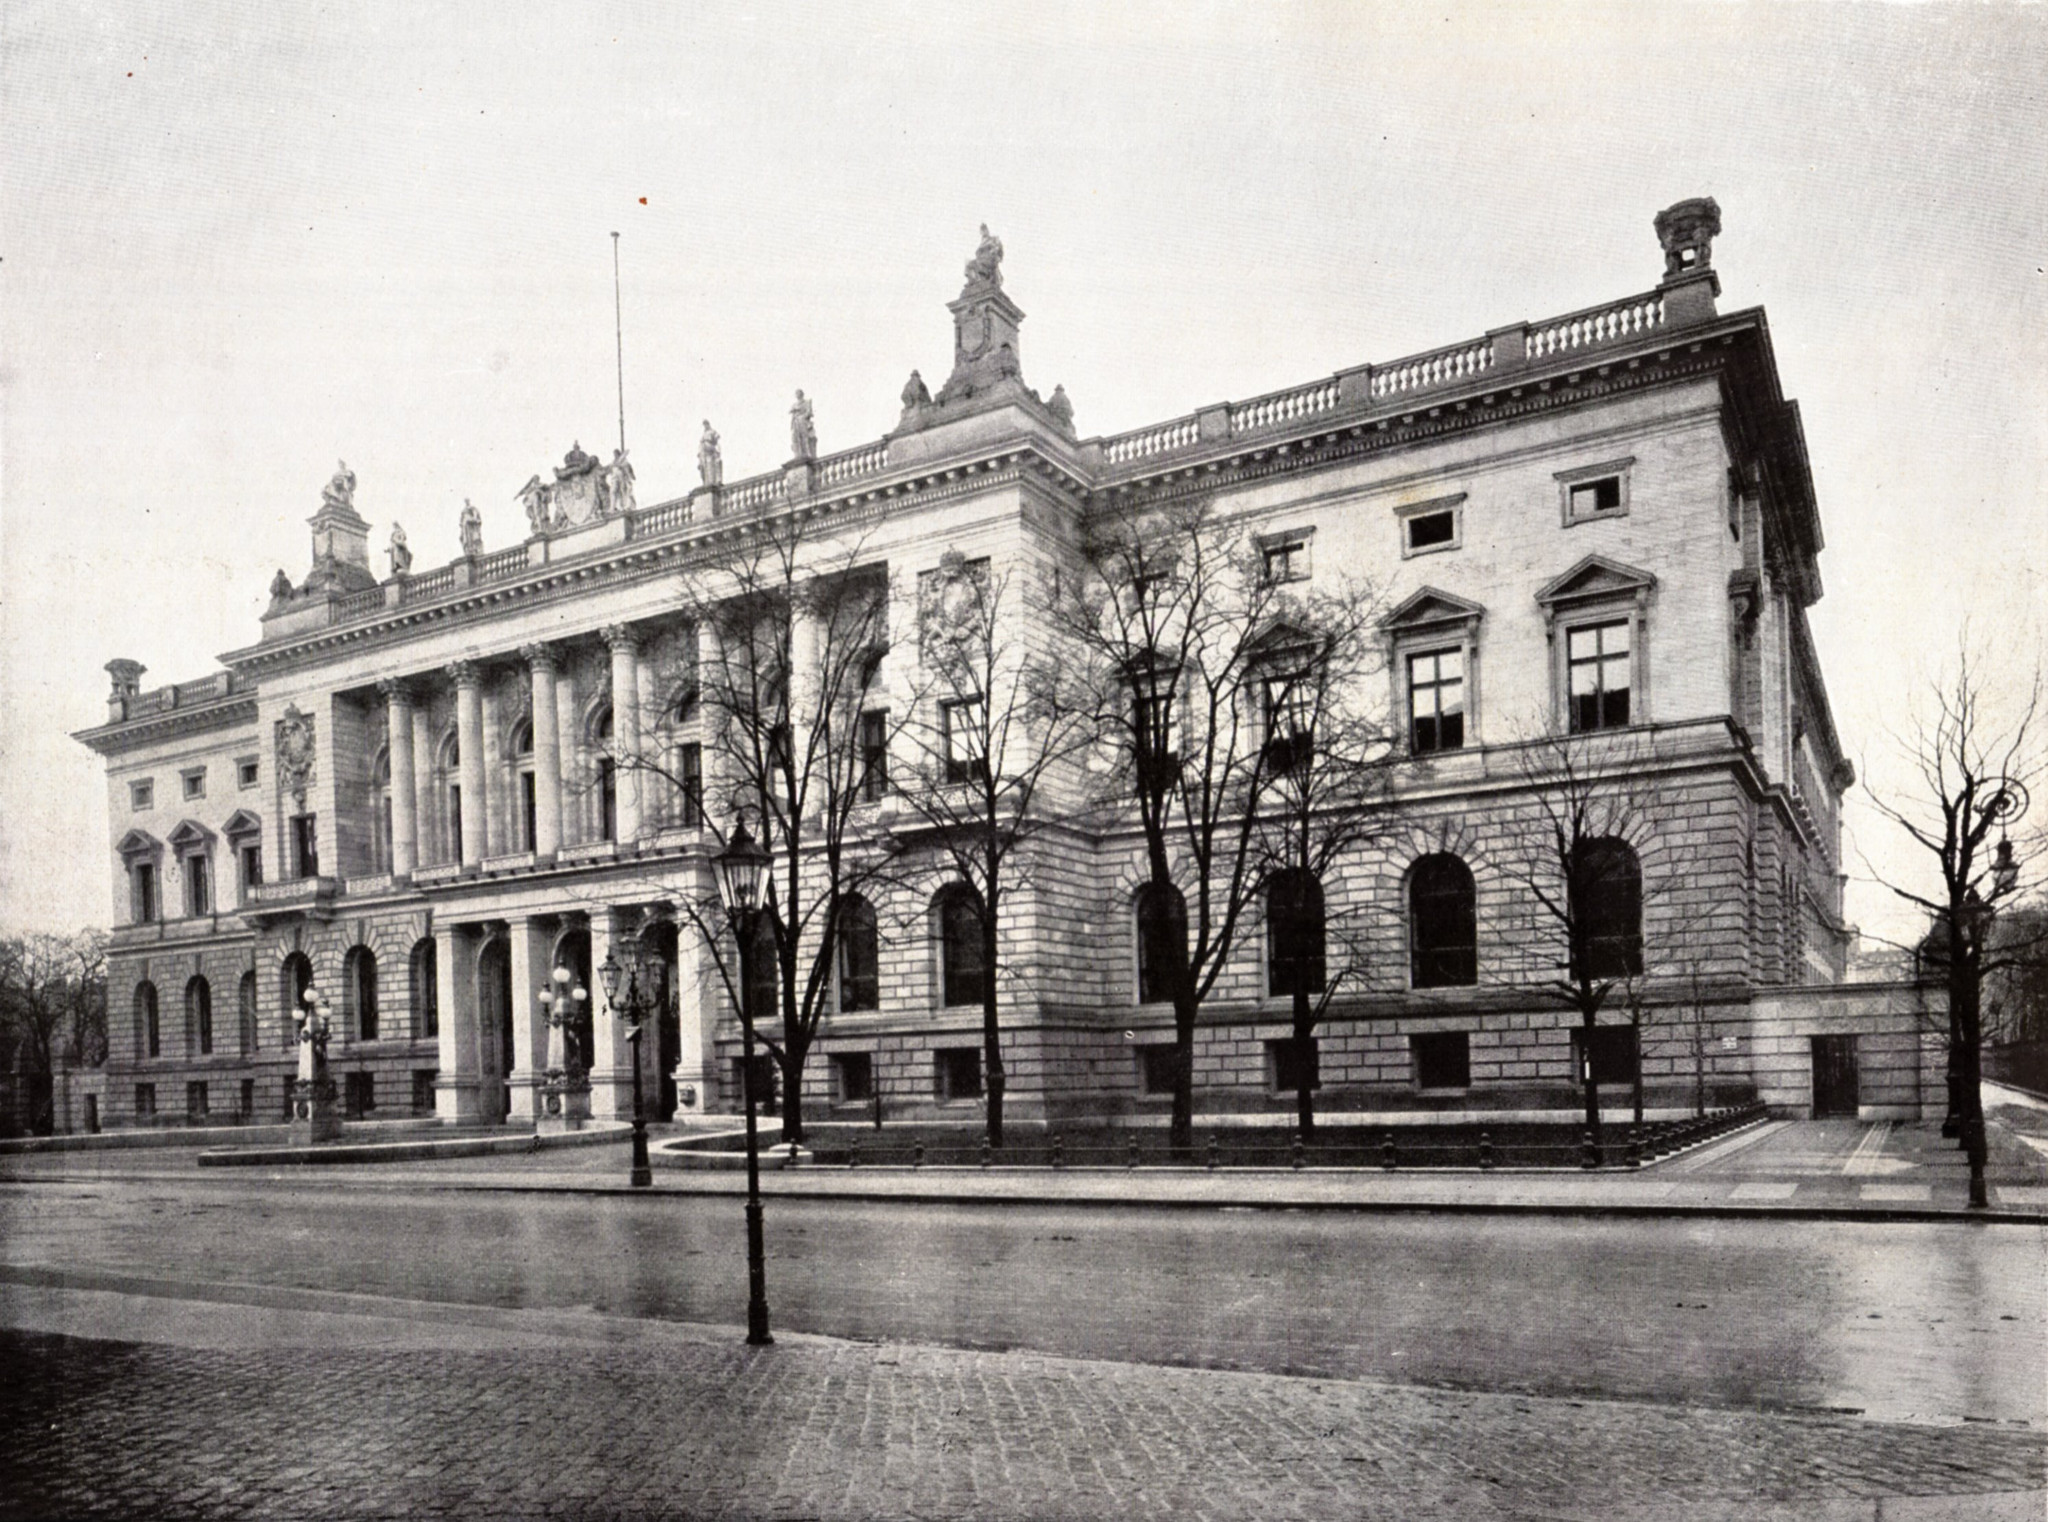 The Berlin Abgeordnetenhaus around 1900